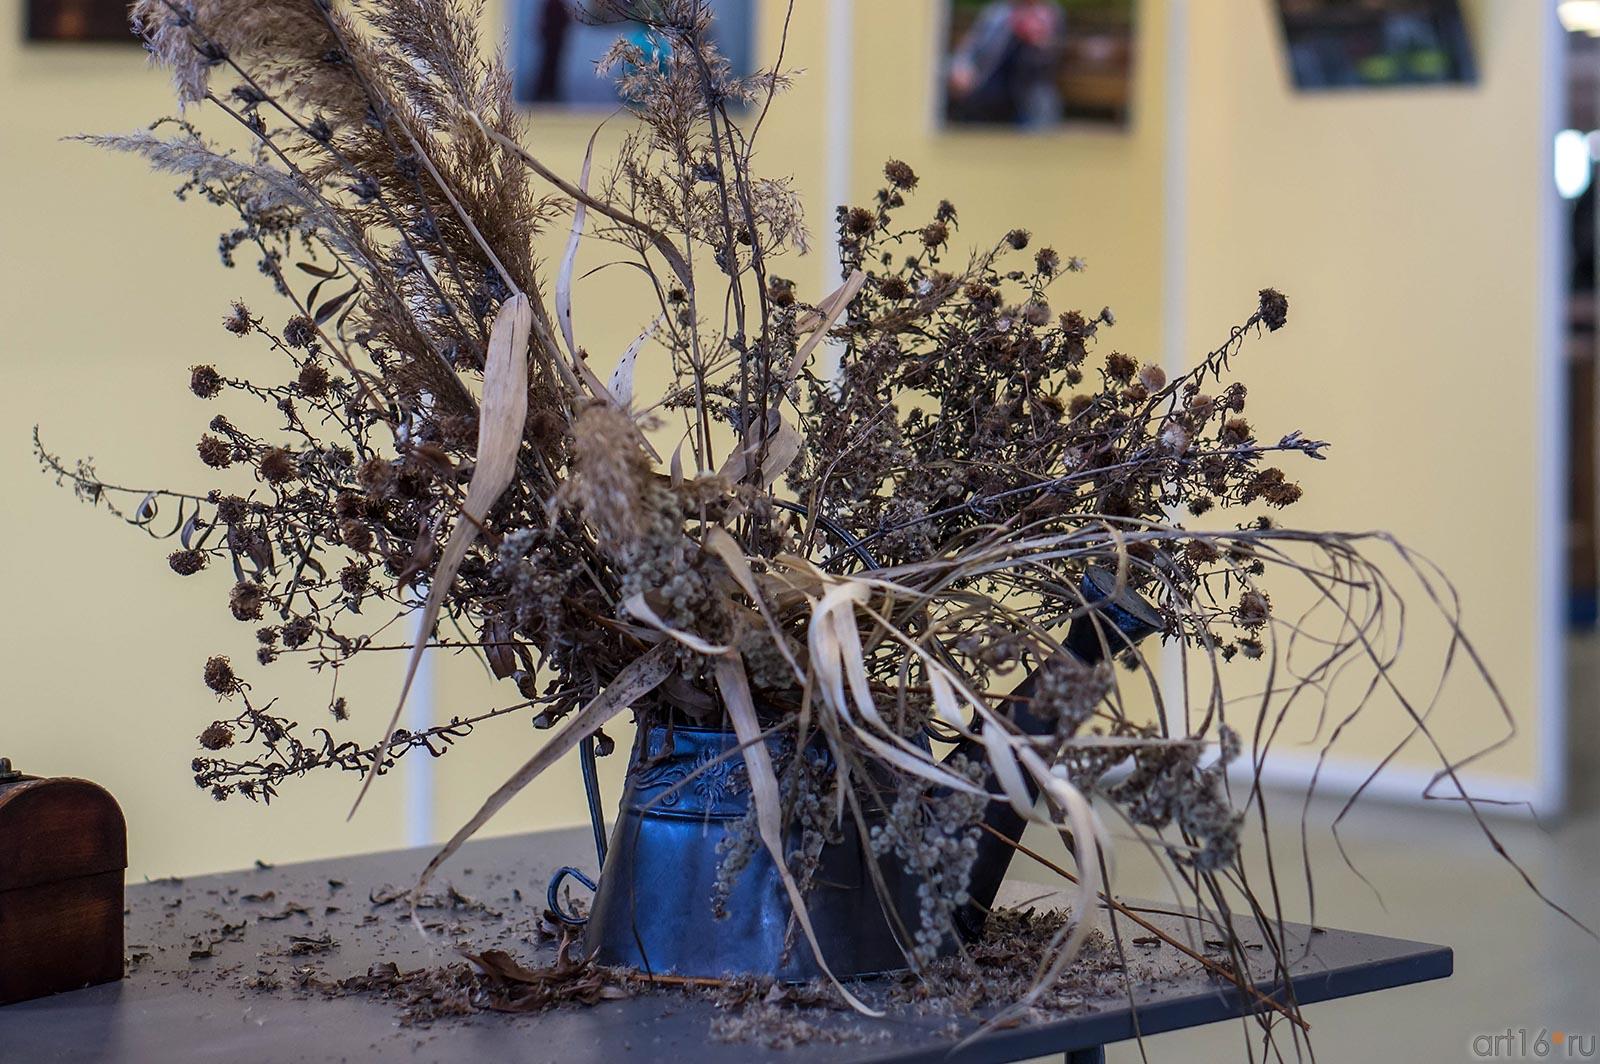 Букет сухоцвета, собранный К.Матвиенко на Казанской ярмарке::Арт-галерея 2013, на Казанской ярмарке ( ч.2)